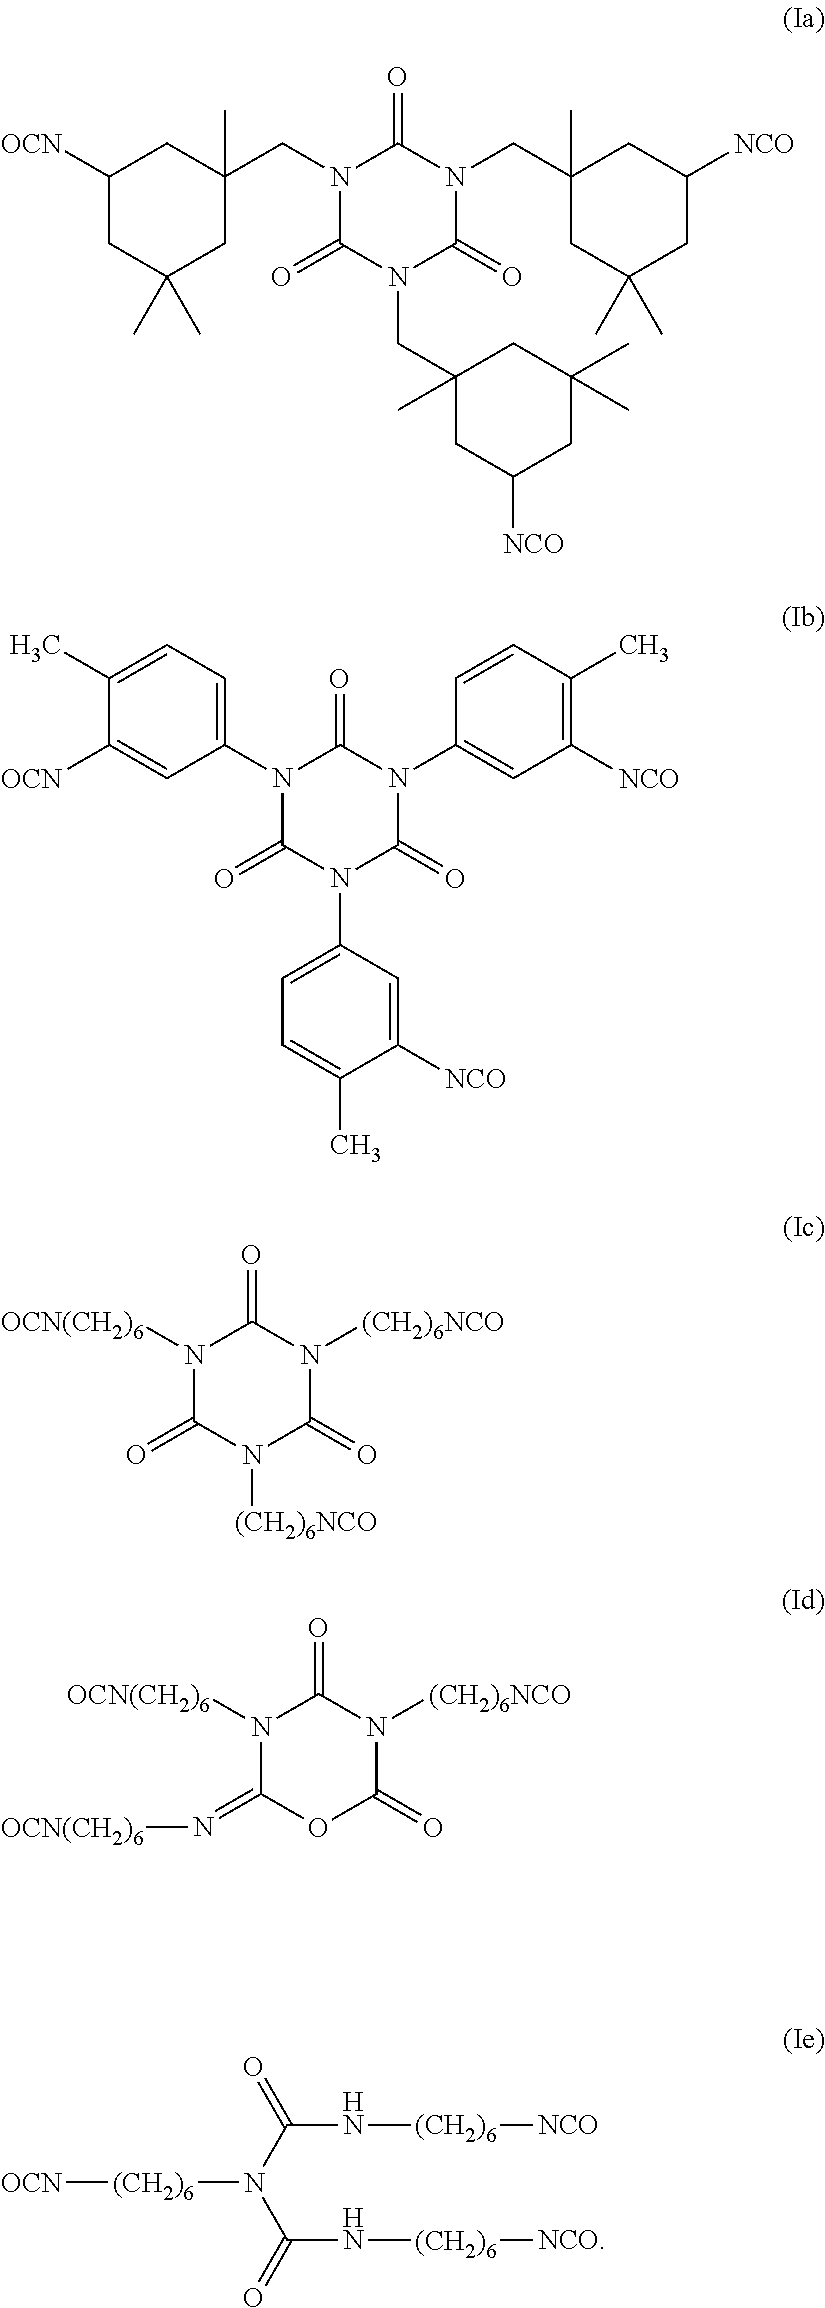 Partially fluorinated urethane based coatings